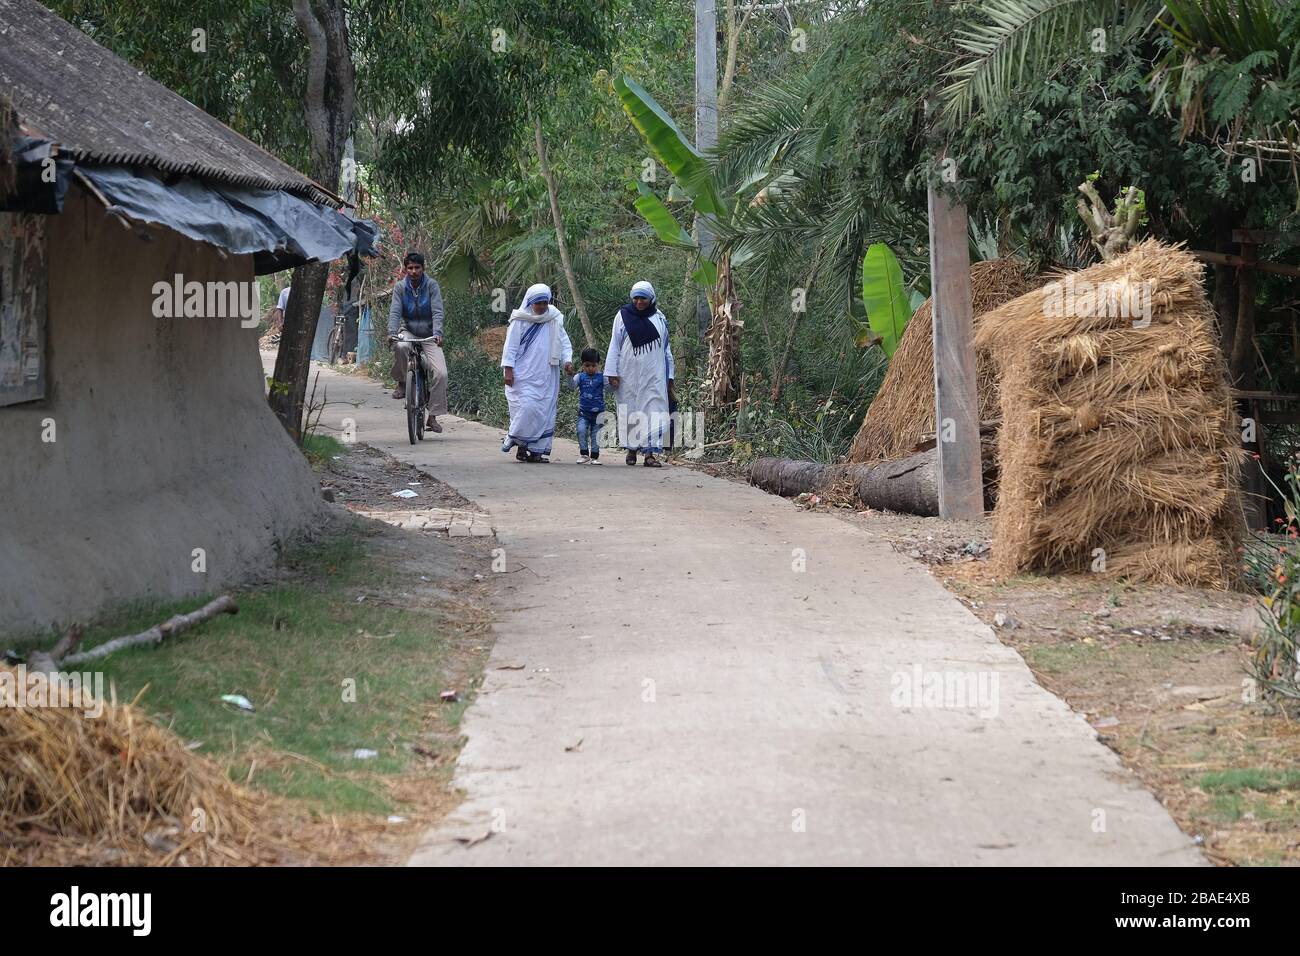 Missionari della Carità - le suore di Madre Teresa camminano con i bambini a Chunakhali, Bengala Occidentale, India Foto Stock